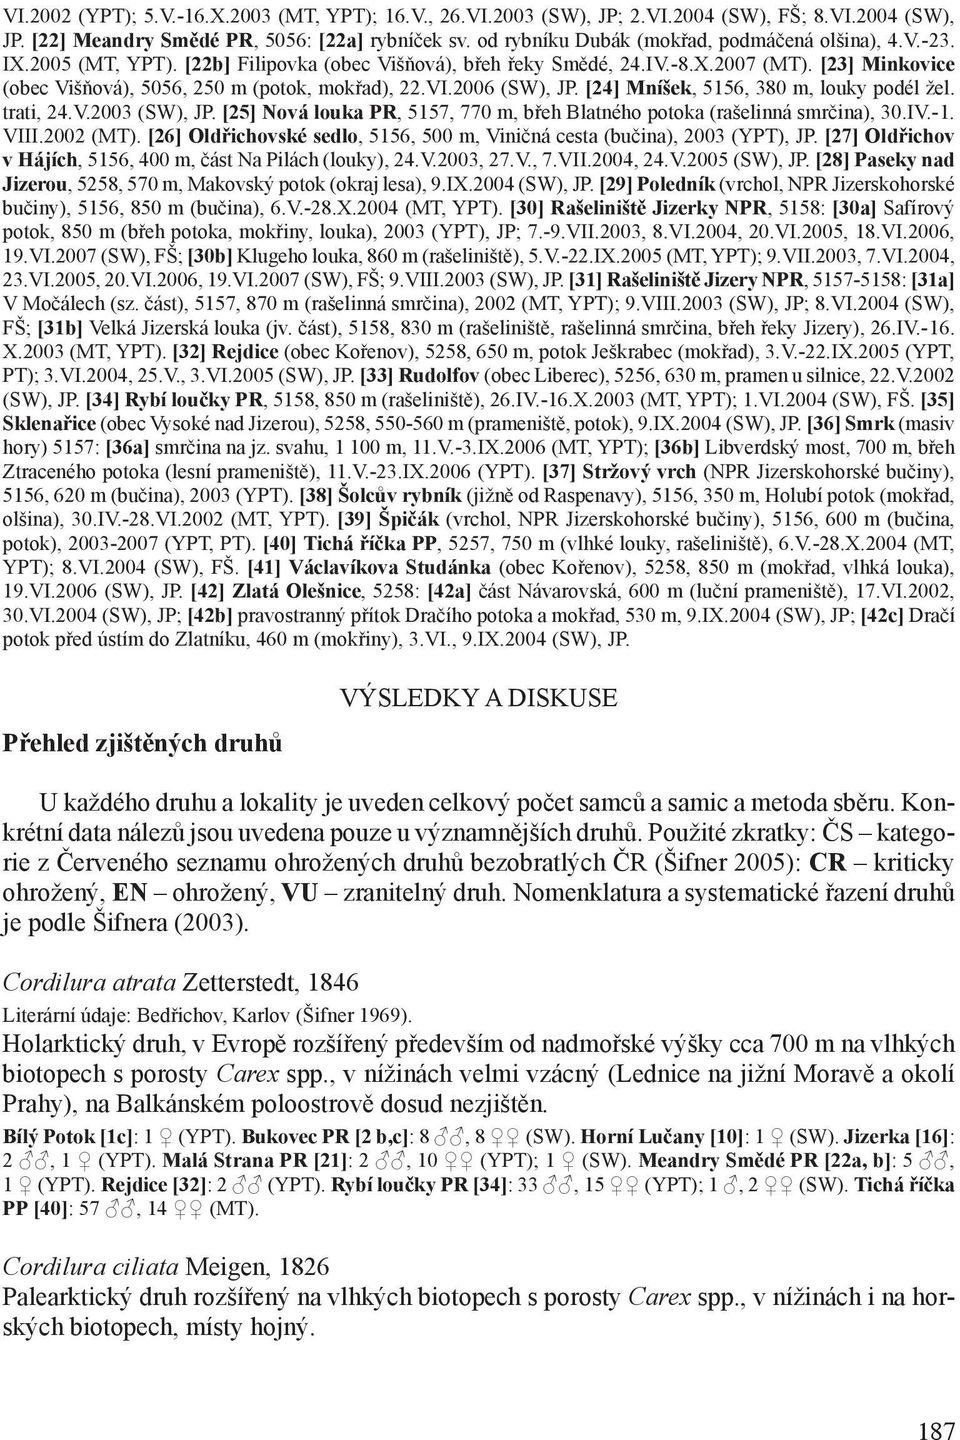 [23] Minkovice (obec Višňová), 5056, 250 m (potok, mokřad), 22.VI.2006 (SW), JP. [24] Mníšek, 5156, 380 m, louky podél žel. trati, 24.V.2003 (SW), JP.